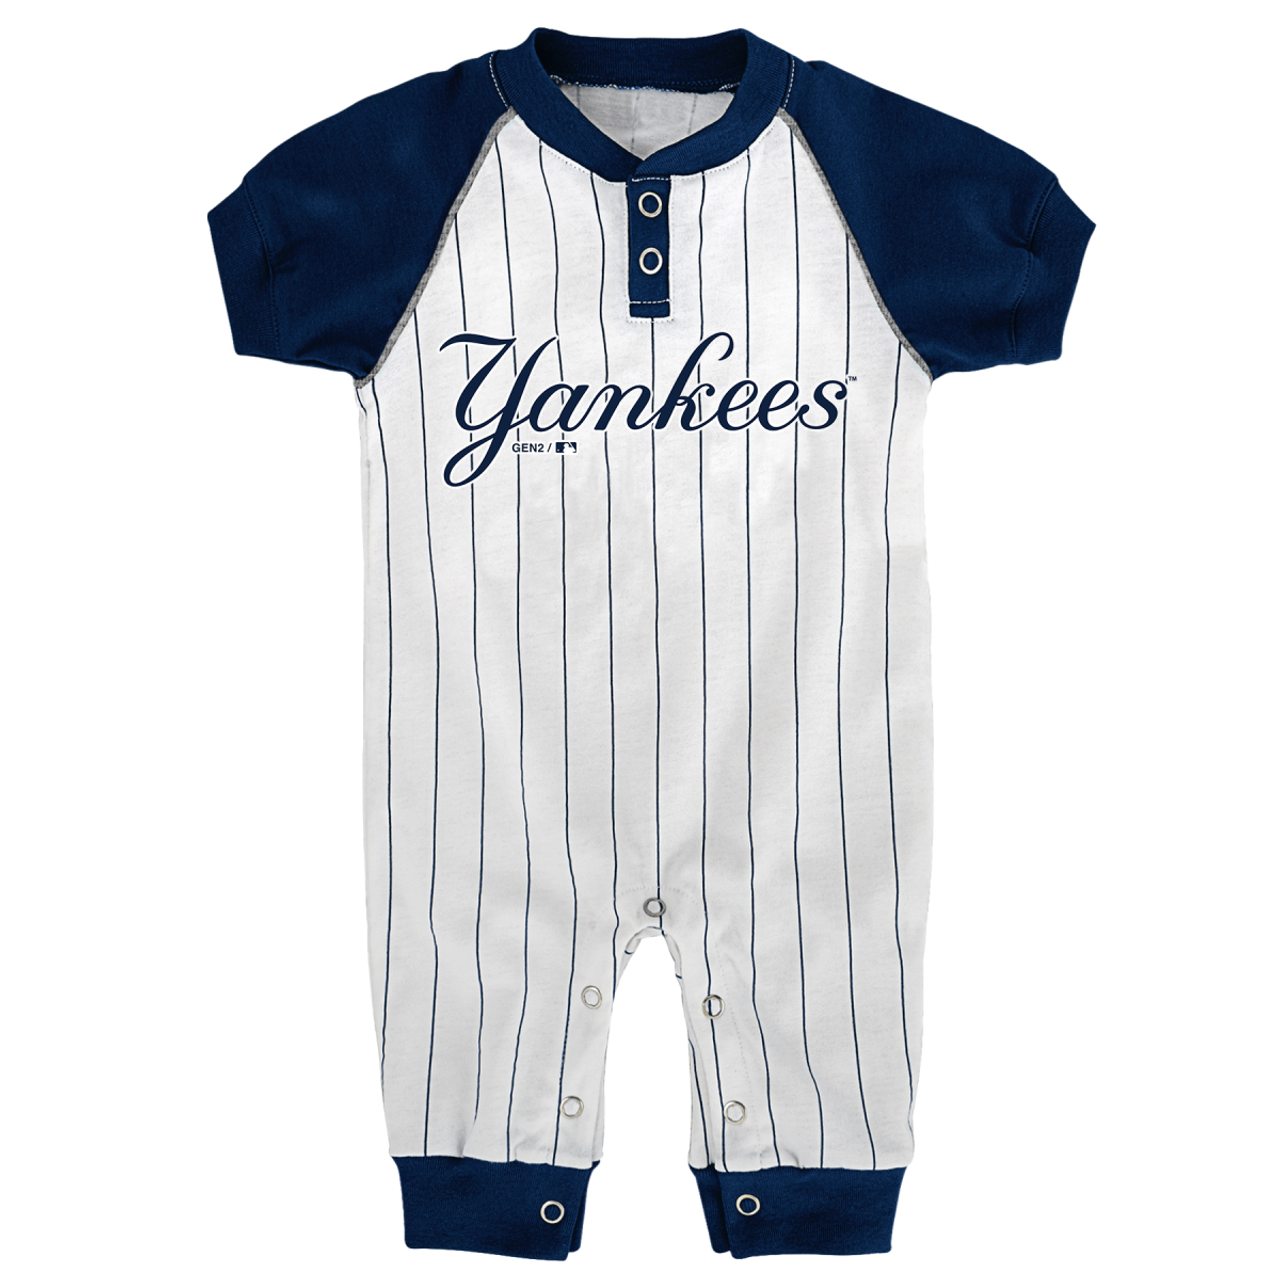 infant baseball jersey onesie